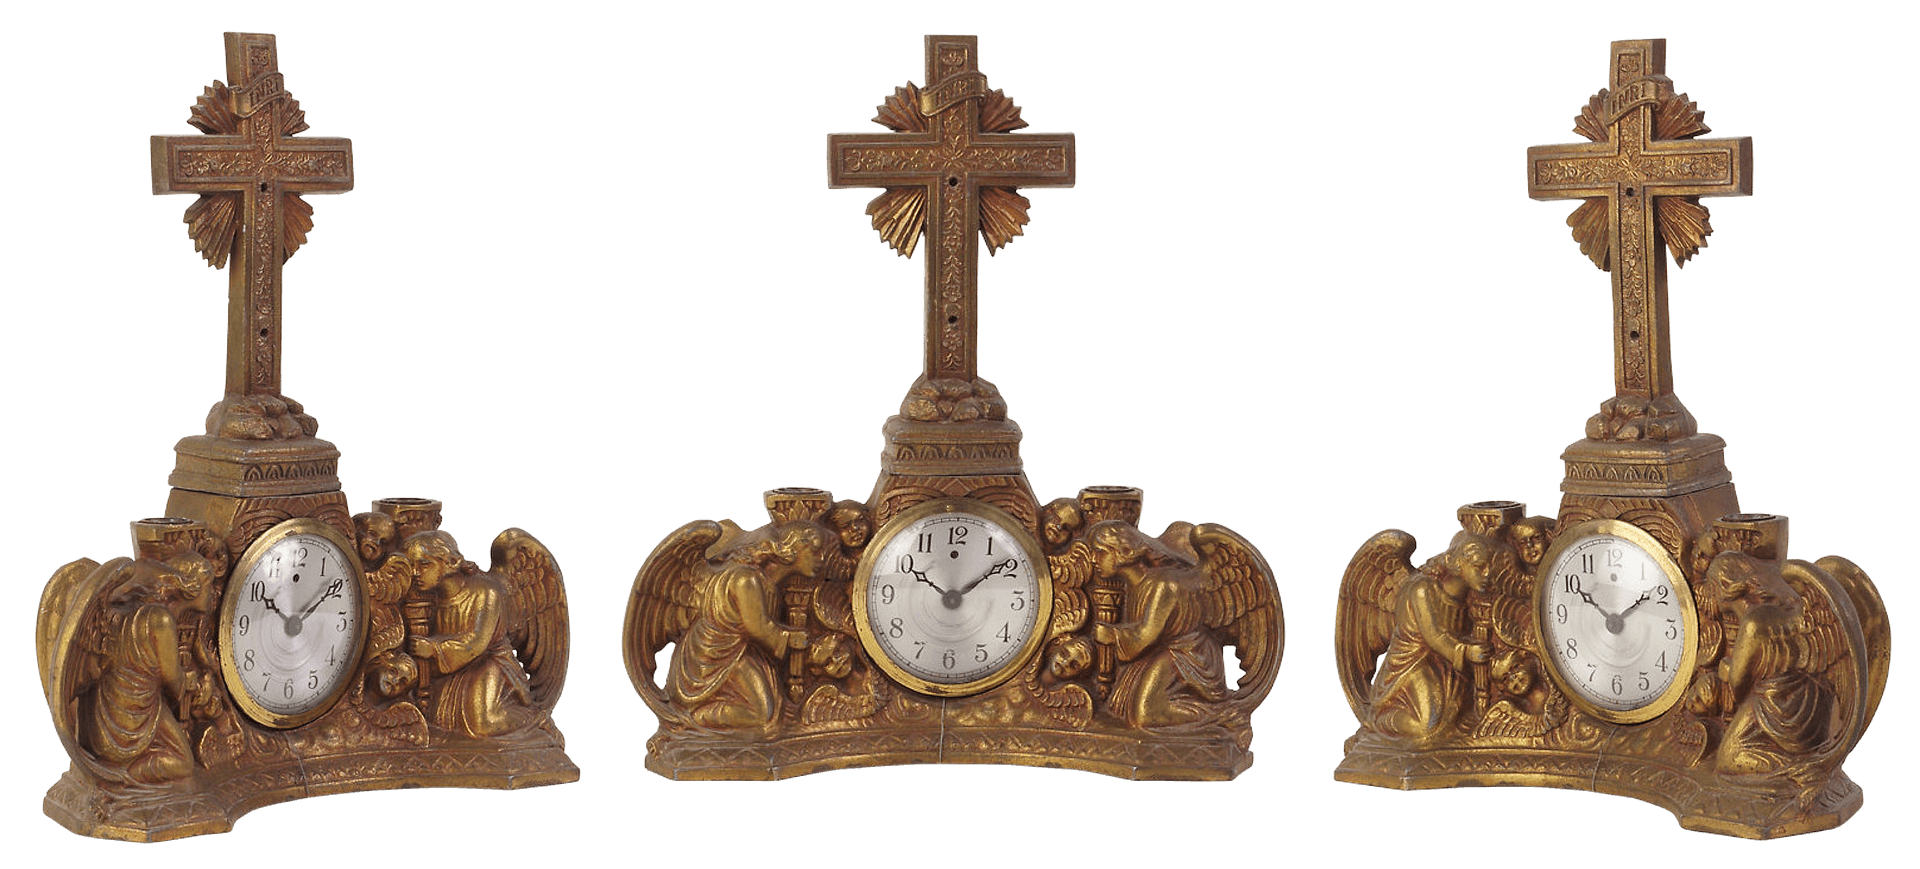 Antique Religious Mantel Clock Set PNG image